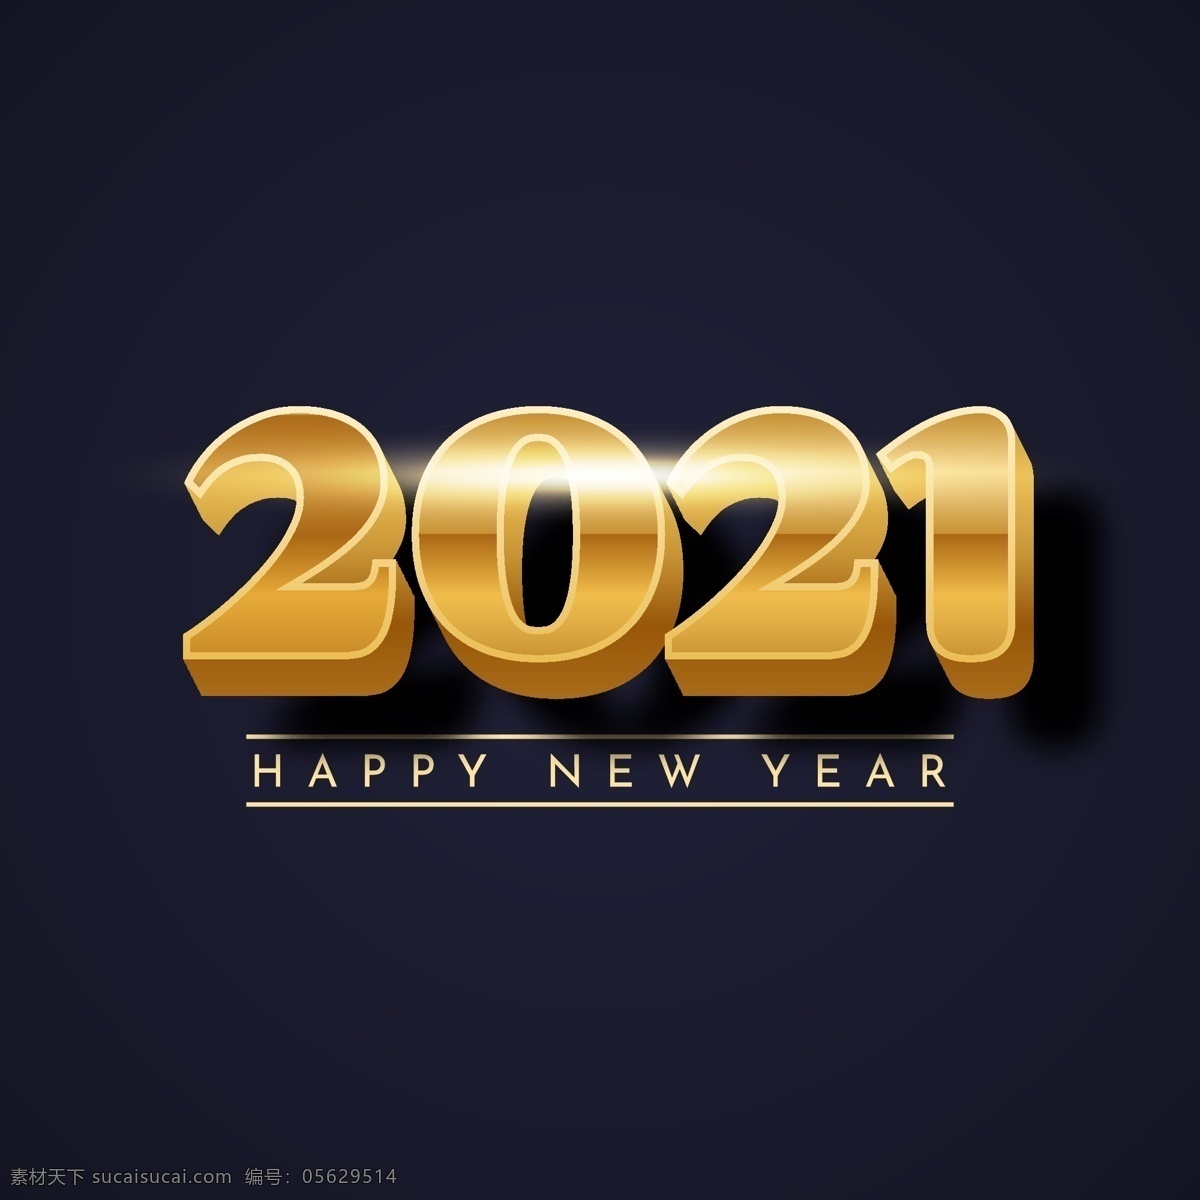 2021 数字 2021数字 立体数字 3d数字 2021年 金色2021 矢量2021 新年快乐英文 彩带 金色元素 金色素材 光束 光感 光效 光线 光晕 新年元素 新年素材 节日元素 节日素材 数字字母 标志图标 其他图标